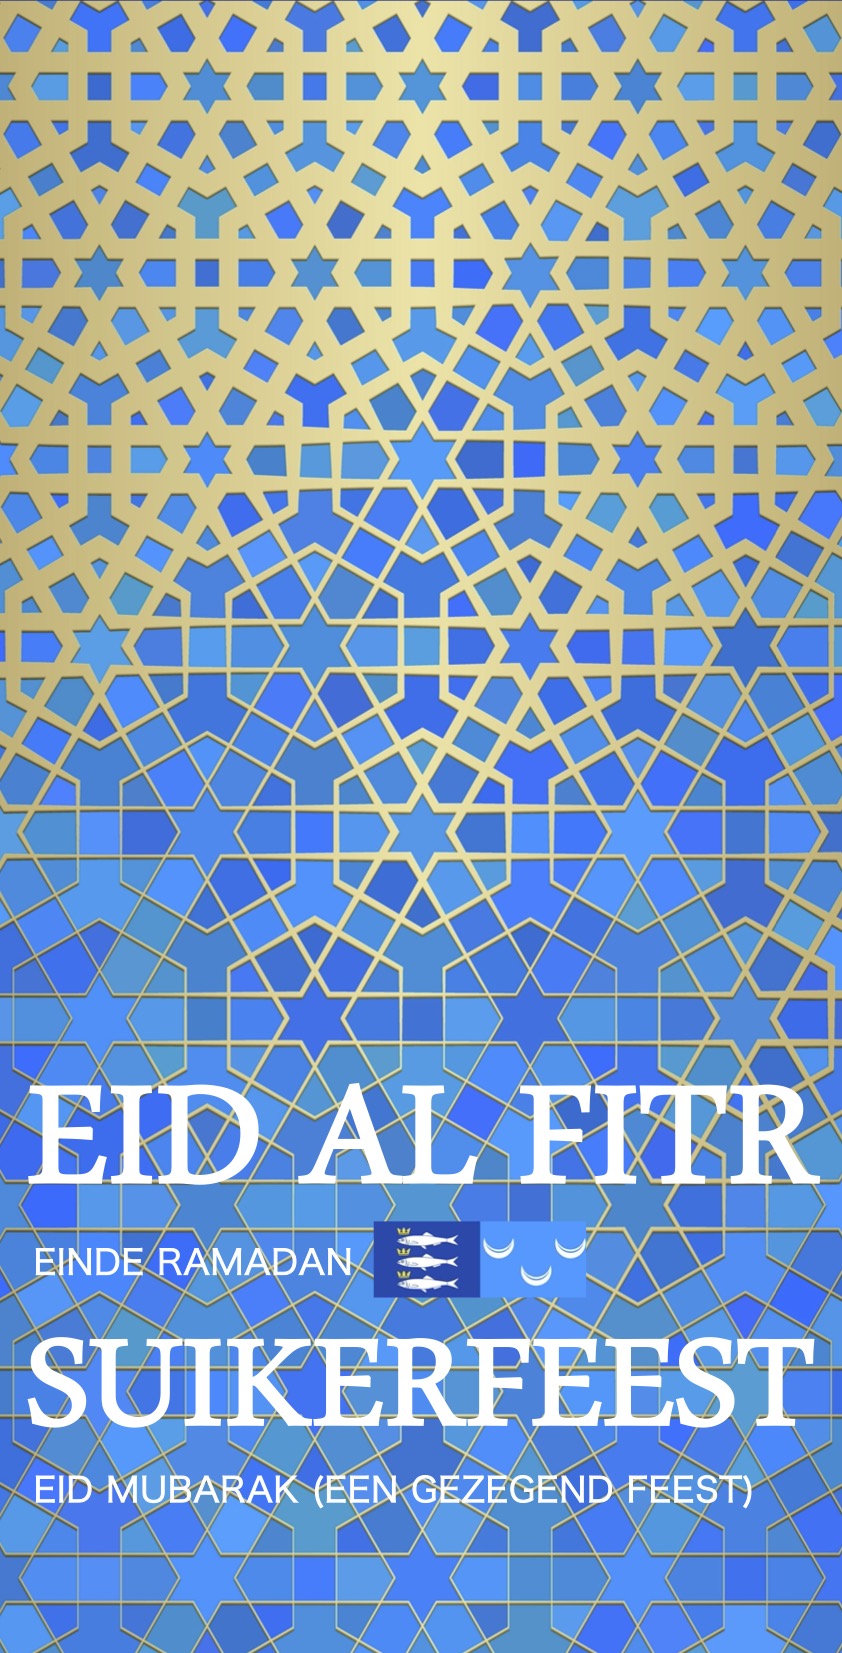 Eid Al Fitr Scheveningen Suikerfeest Wassenaar Eid Mubarak Een Gezegend Feest